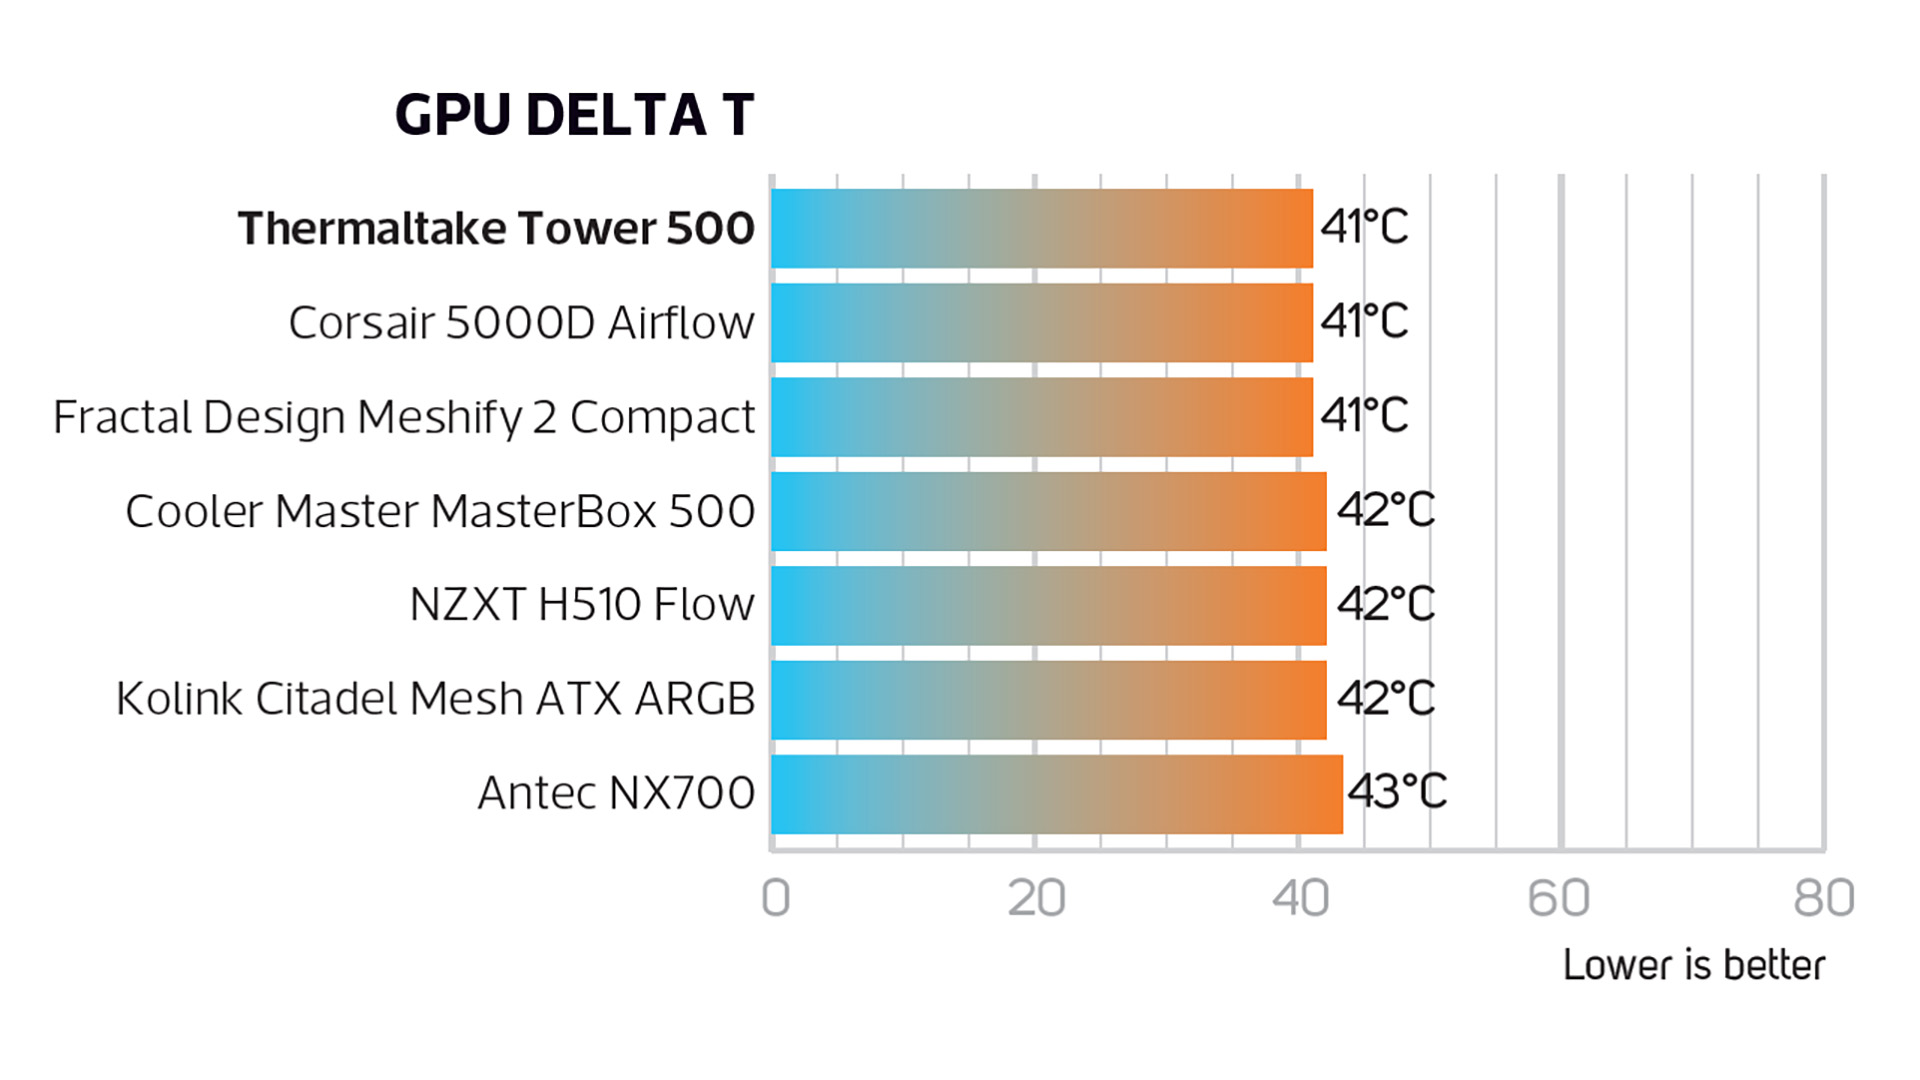 Diğer modellere kıyasla GPU sıcaklığı sonuçlarını gösteren Thermaltake Tower 500 inceleme görüntüsü.  En düşük eklem sıcaklığı olan 41 dereceyi okuyor.